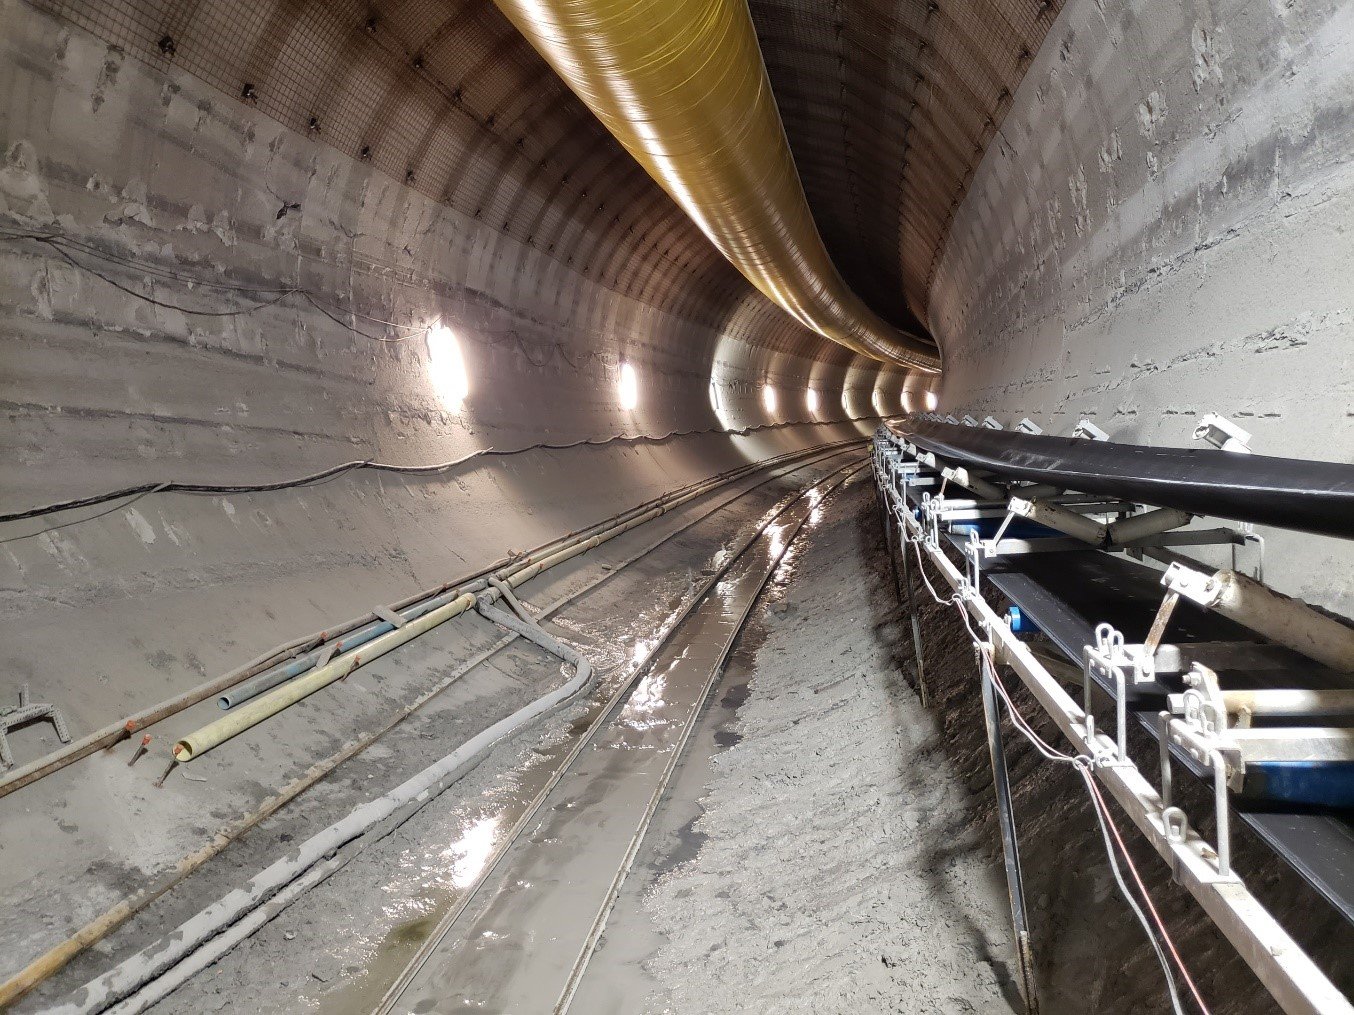 November 2021 - 32.58-ft diameter Tunnel